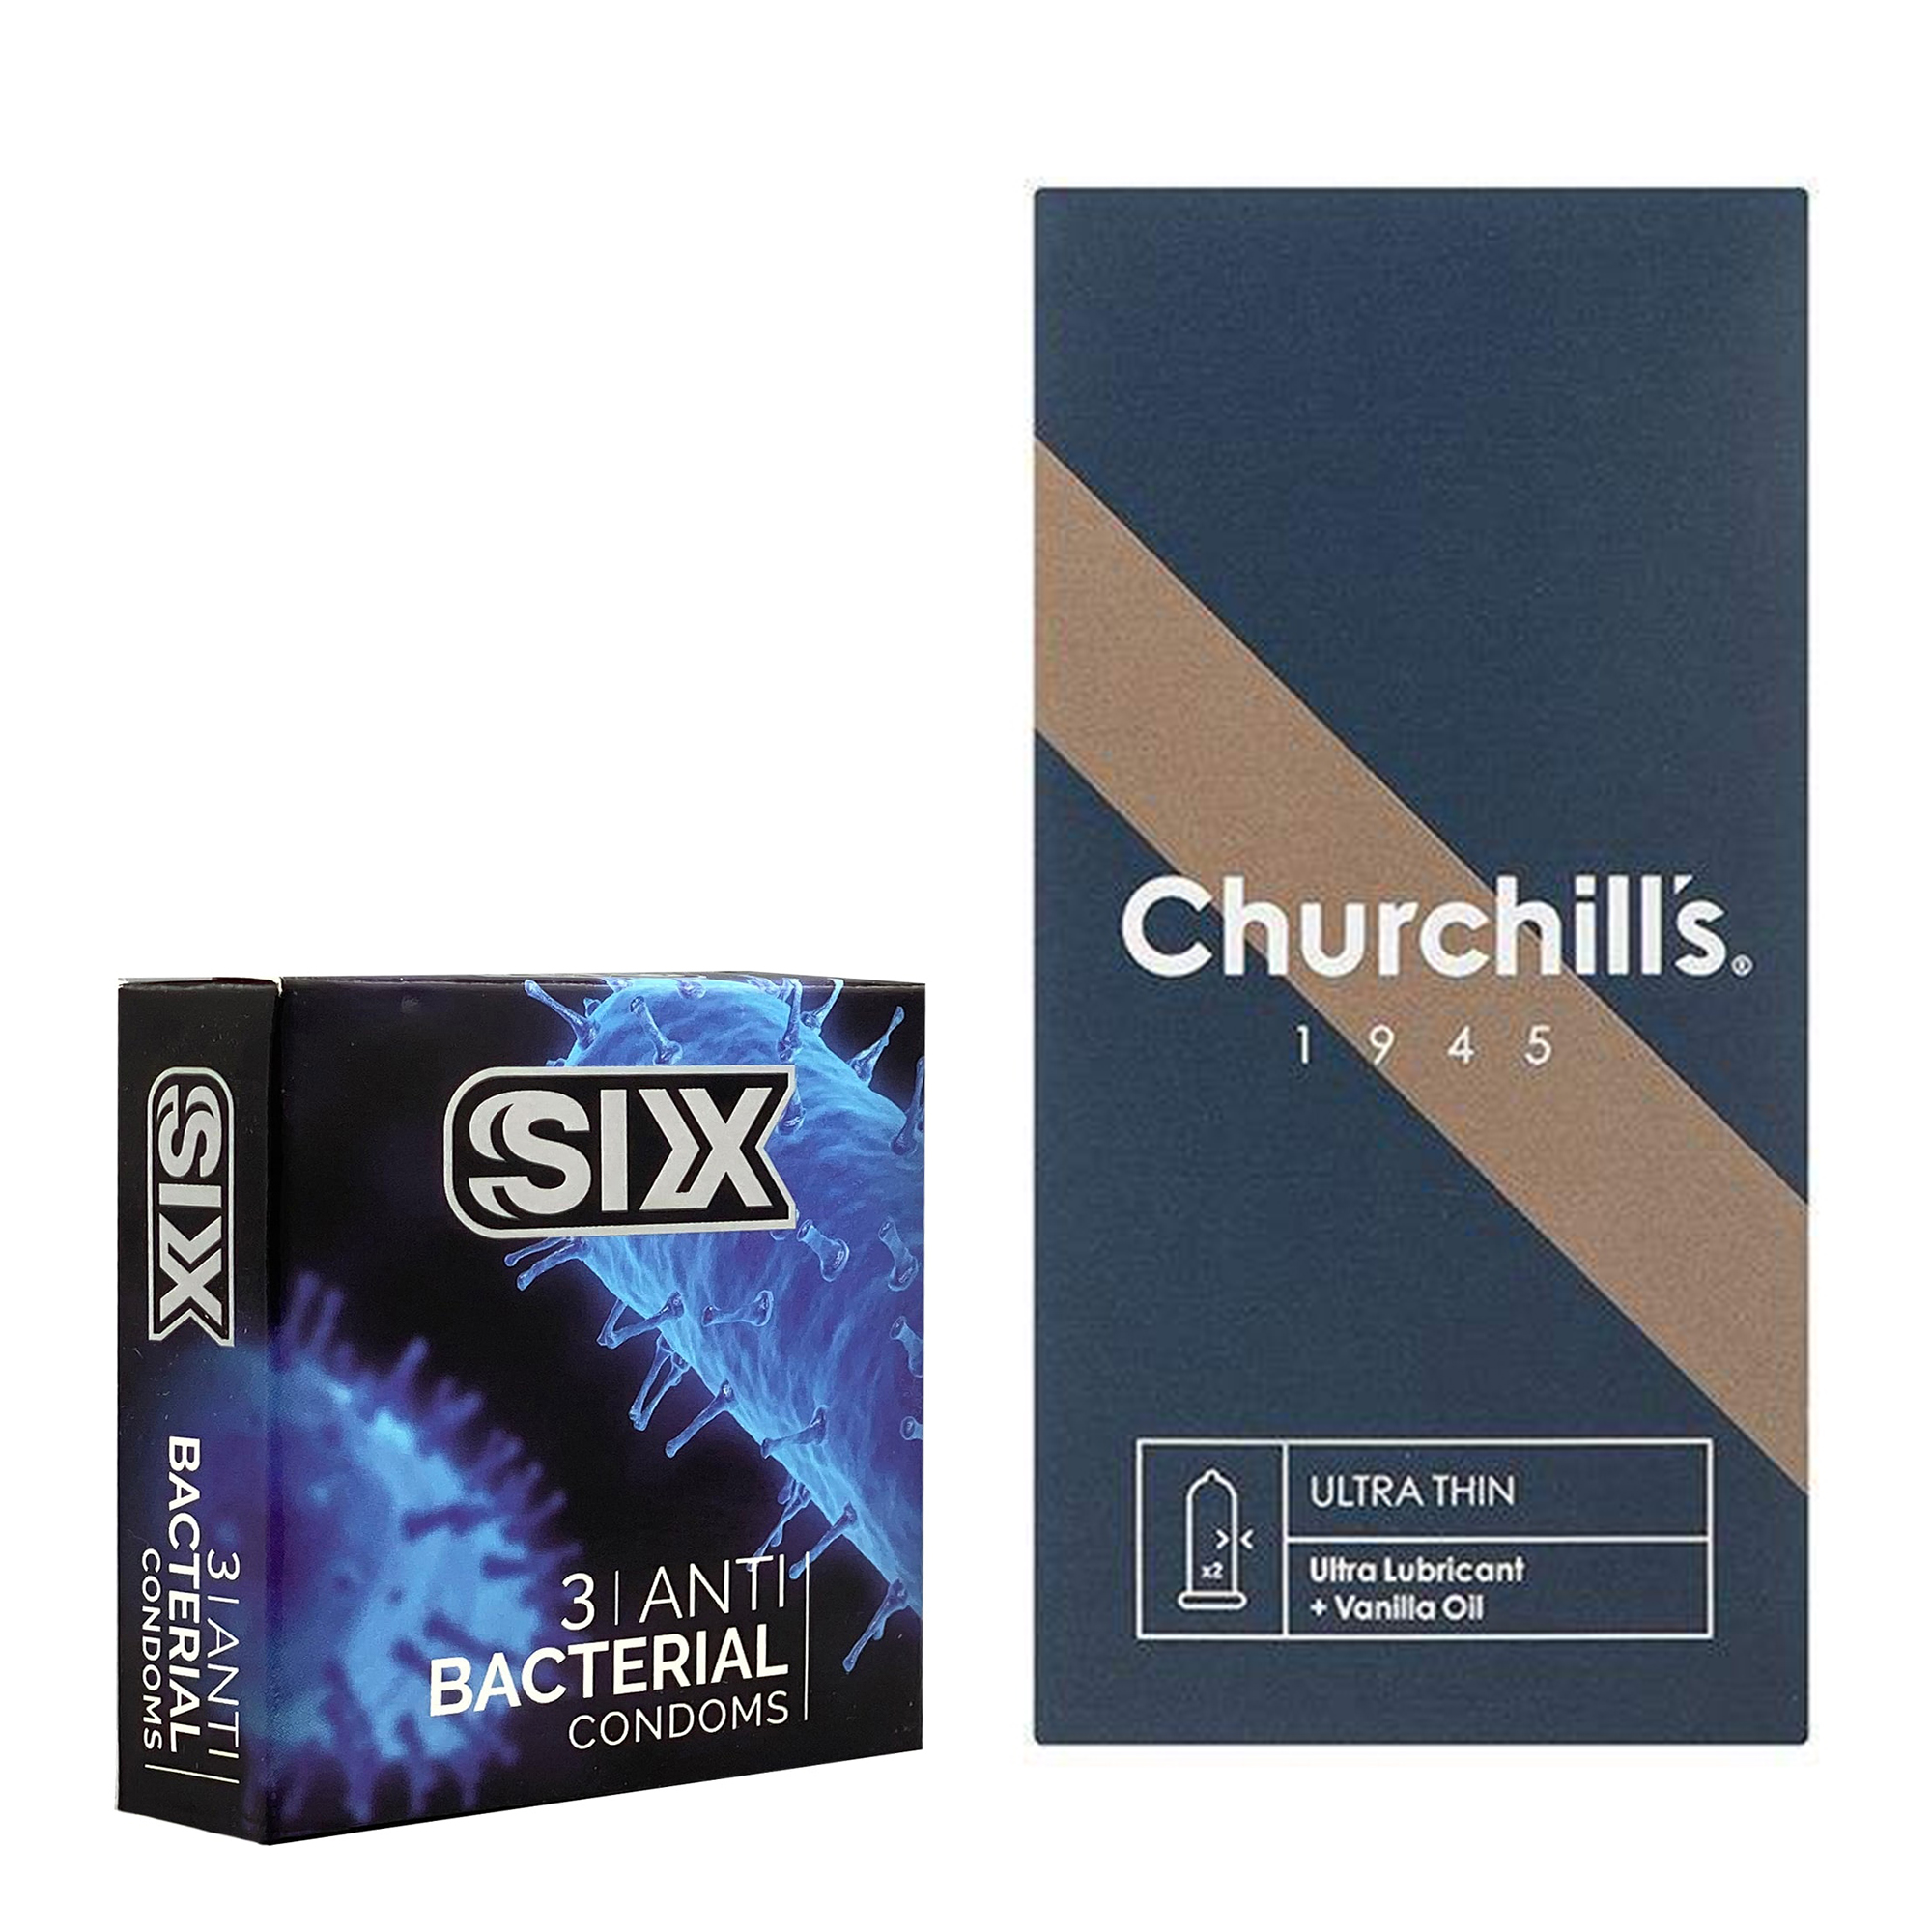 کاندوم چرچیلز مدل Ultra Thin بسته 12 عددی به همراه کاندوم سیکس مدل آنتی باکتریال بسته 3 عددی 